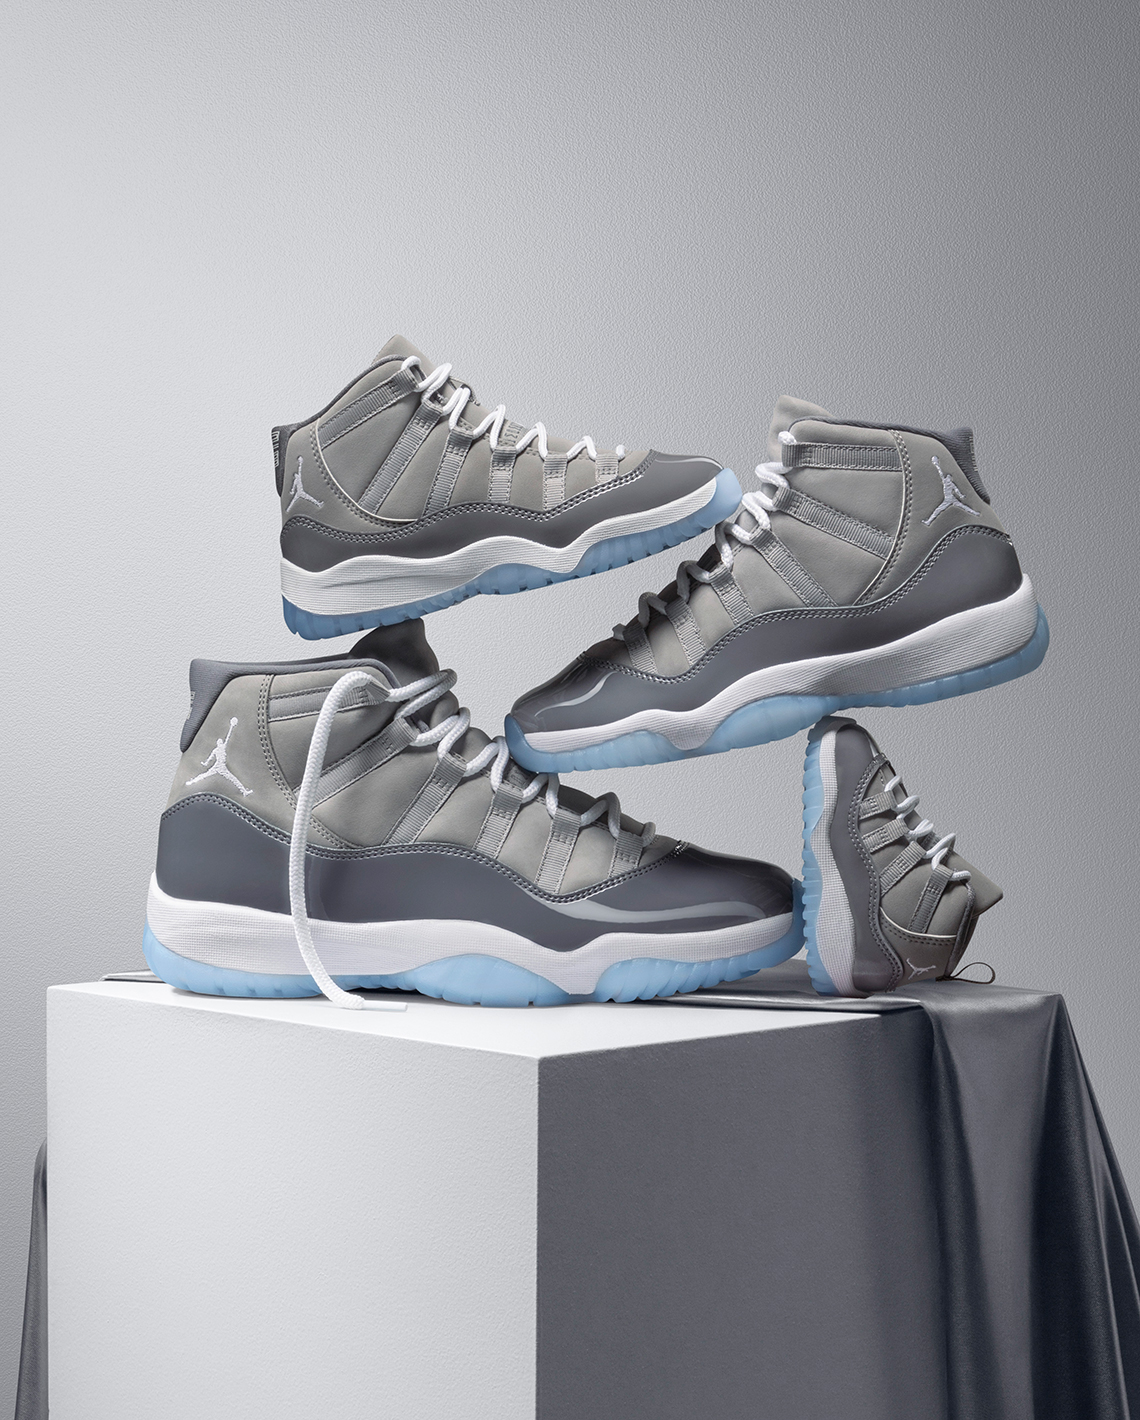 Air Jordan 11 Cool Grey CT8012-005 Release Date | SneakerNews.com